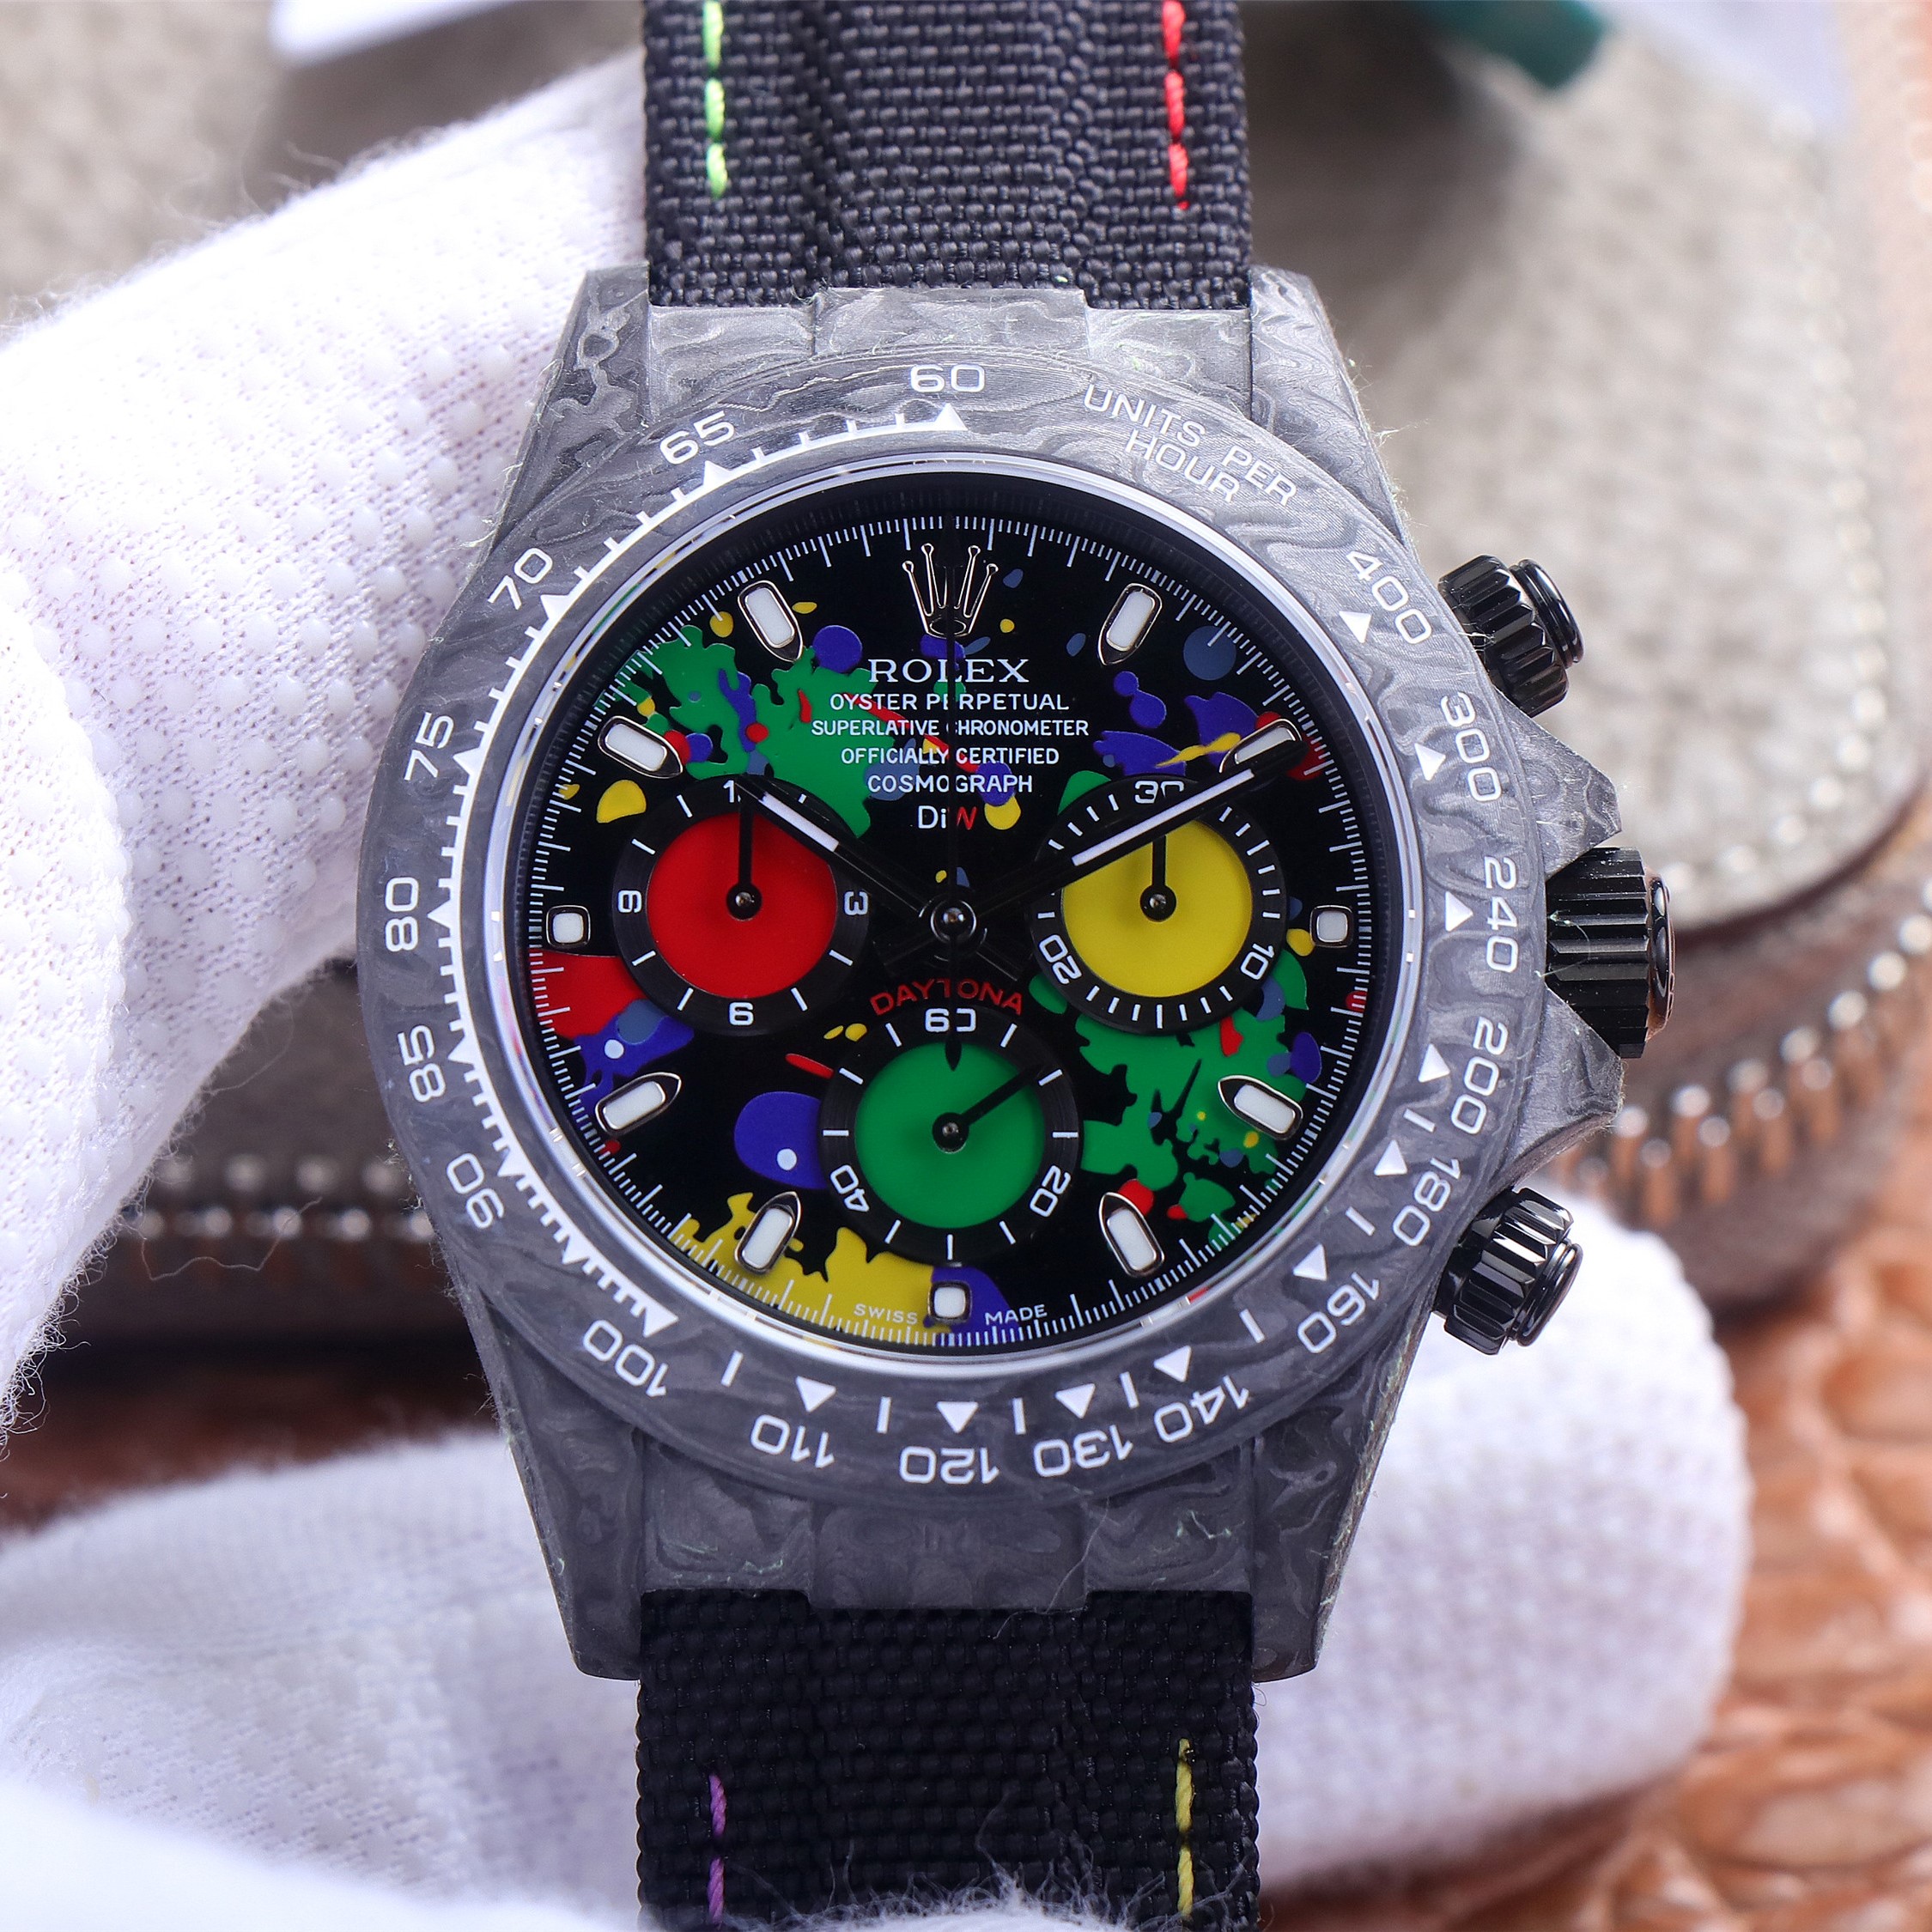 202302120523125 - 仿勞力士迪通拿價格及圖片 JH廠手錶精仿勞力士迪通拿碳纖維定制版￥4580